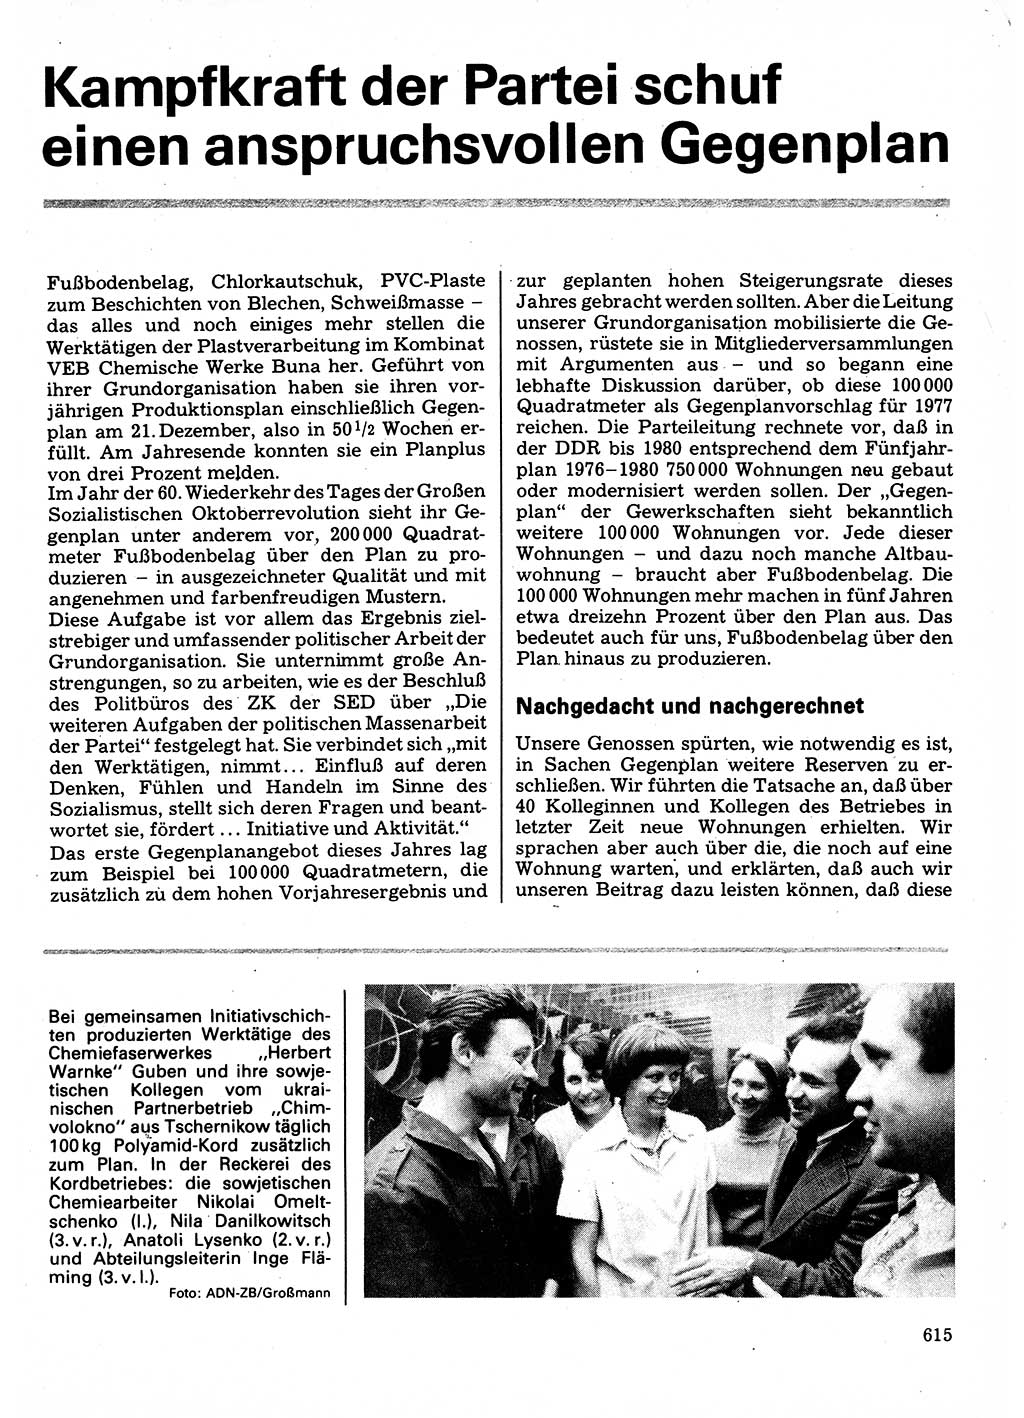 Neuer Weg (NW), Organ des Zentralkomitees (ZK) der SED (Sozialistische Einheitspartei Deutschlands) für Fragen des Parteilebens, 32. Jahrgang [Deutsche Demokratische Republik (DDR)] 1977, Seite 615 (NW ZK SED DDR 1977, S. 615)